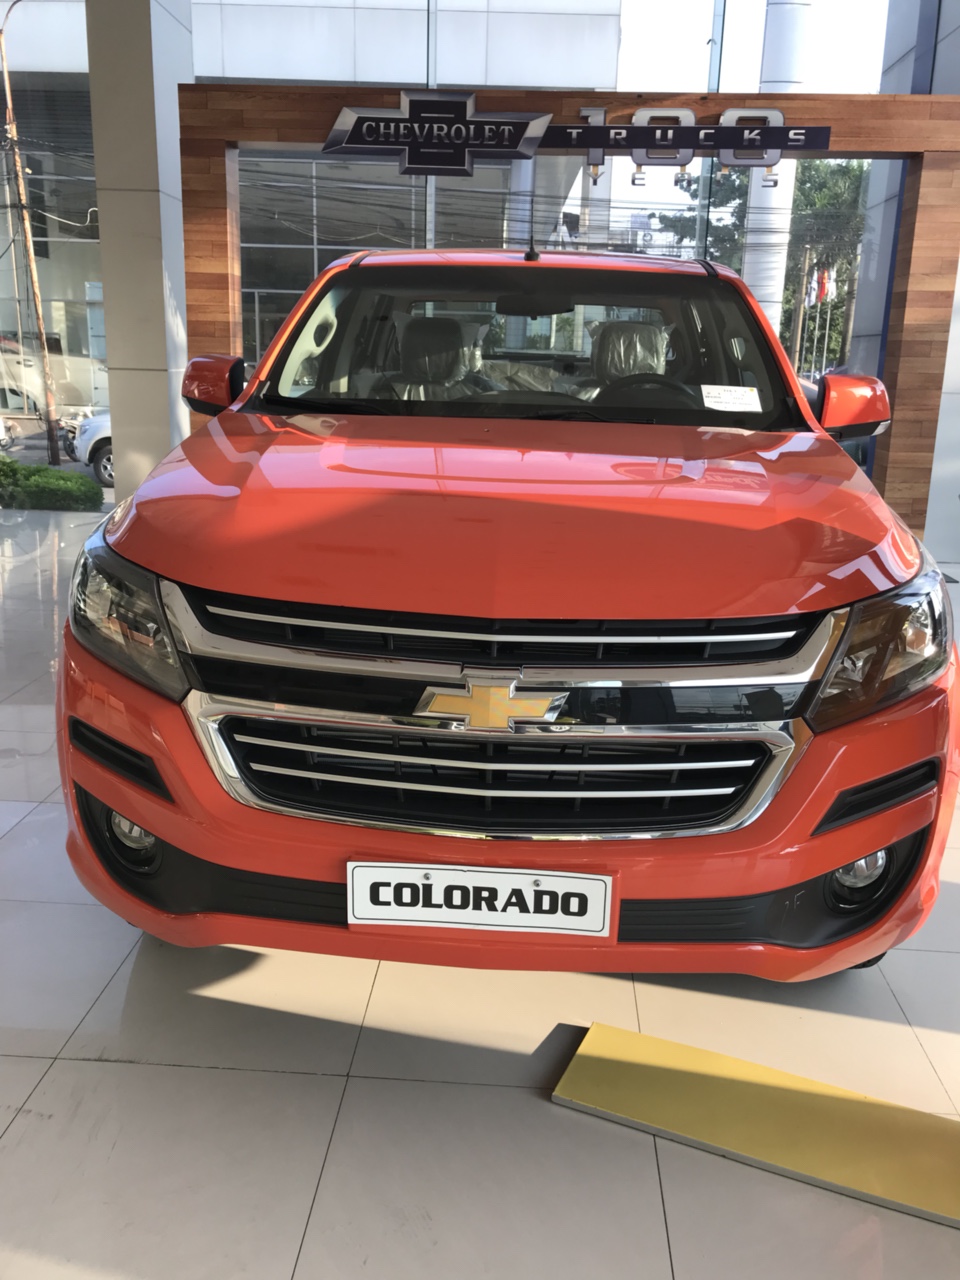 Chevrolet Colorado 2018 - Bán Chevrolet Colorado đời 2018 khuyến mãi tết, sẵn xe, hỗ trợ vay 85 % giá xe, không cần chứng minh thu nhập